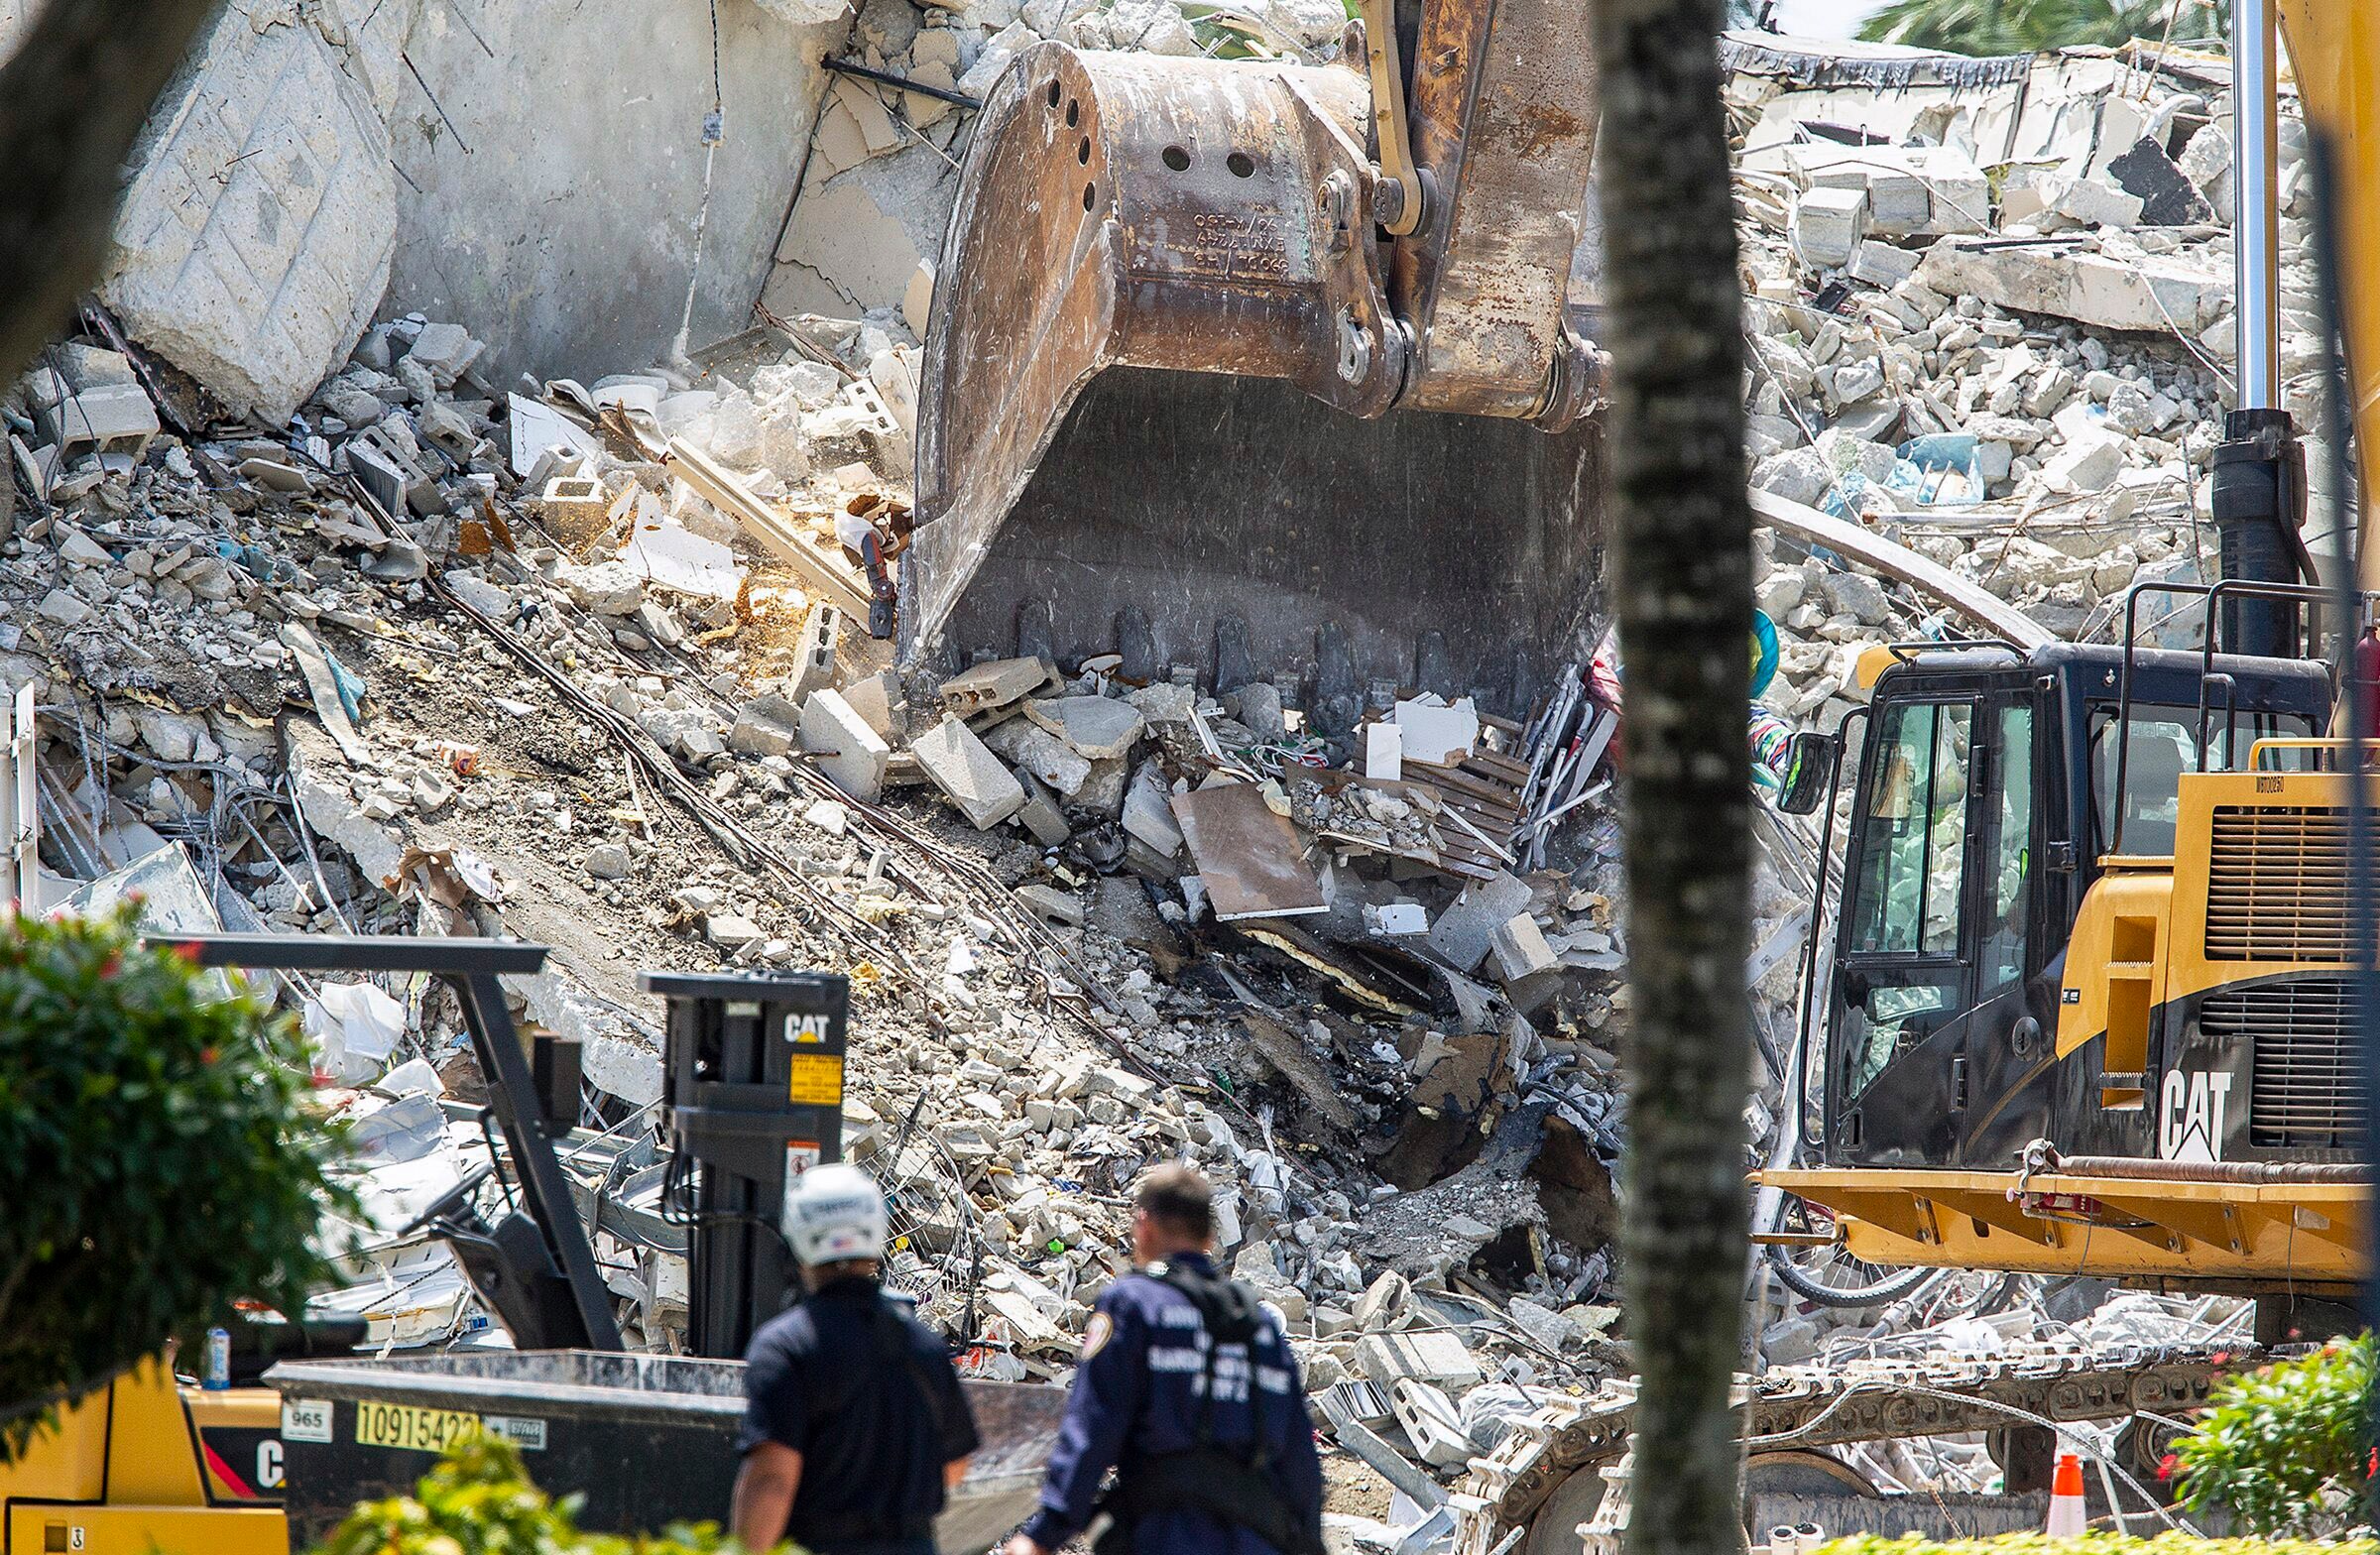 Dodentol na ingestort flatgebouw in Miami loopt op tot 86, nog 43 mensen vermist